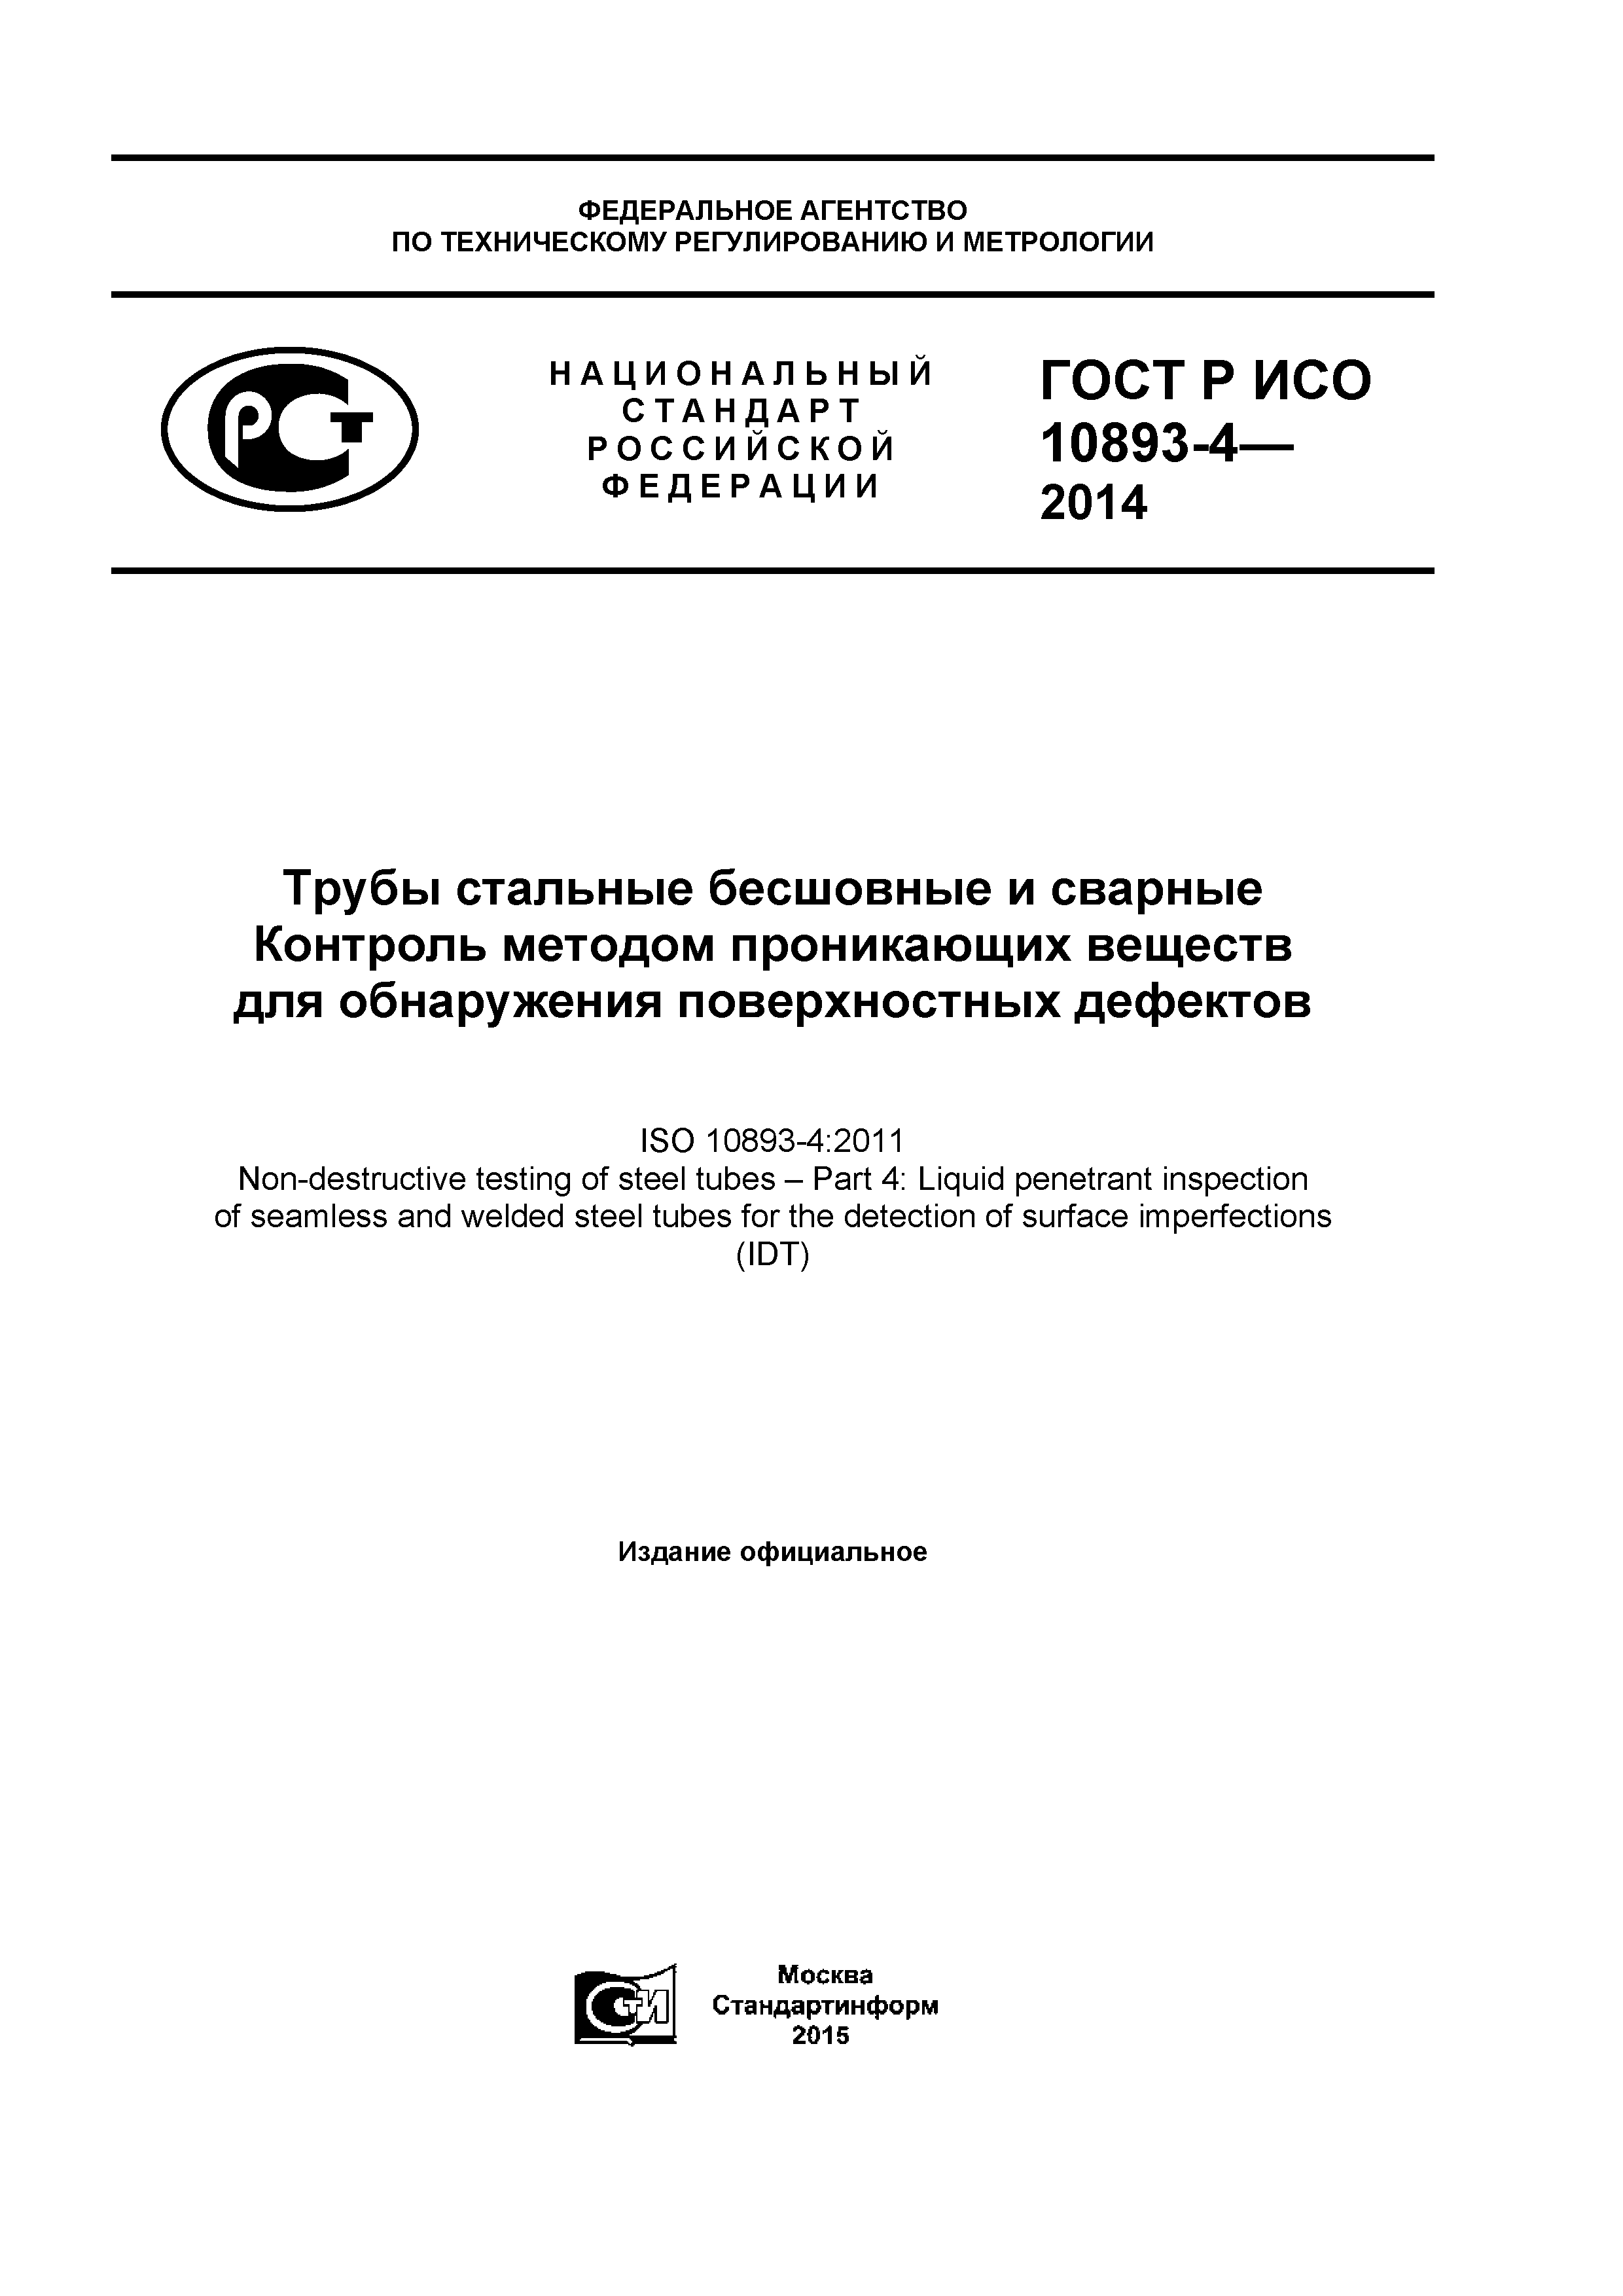 ГОСТ Р ИСО 10893-4-2014